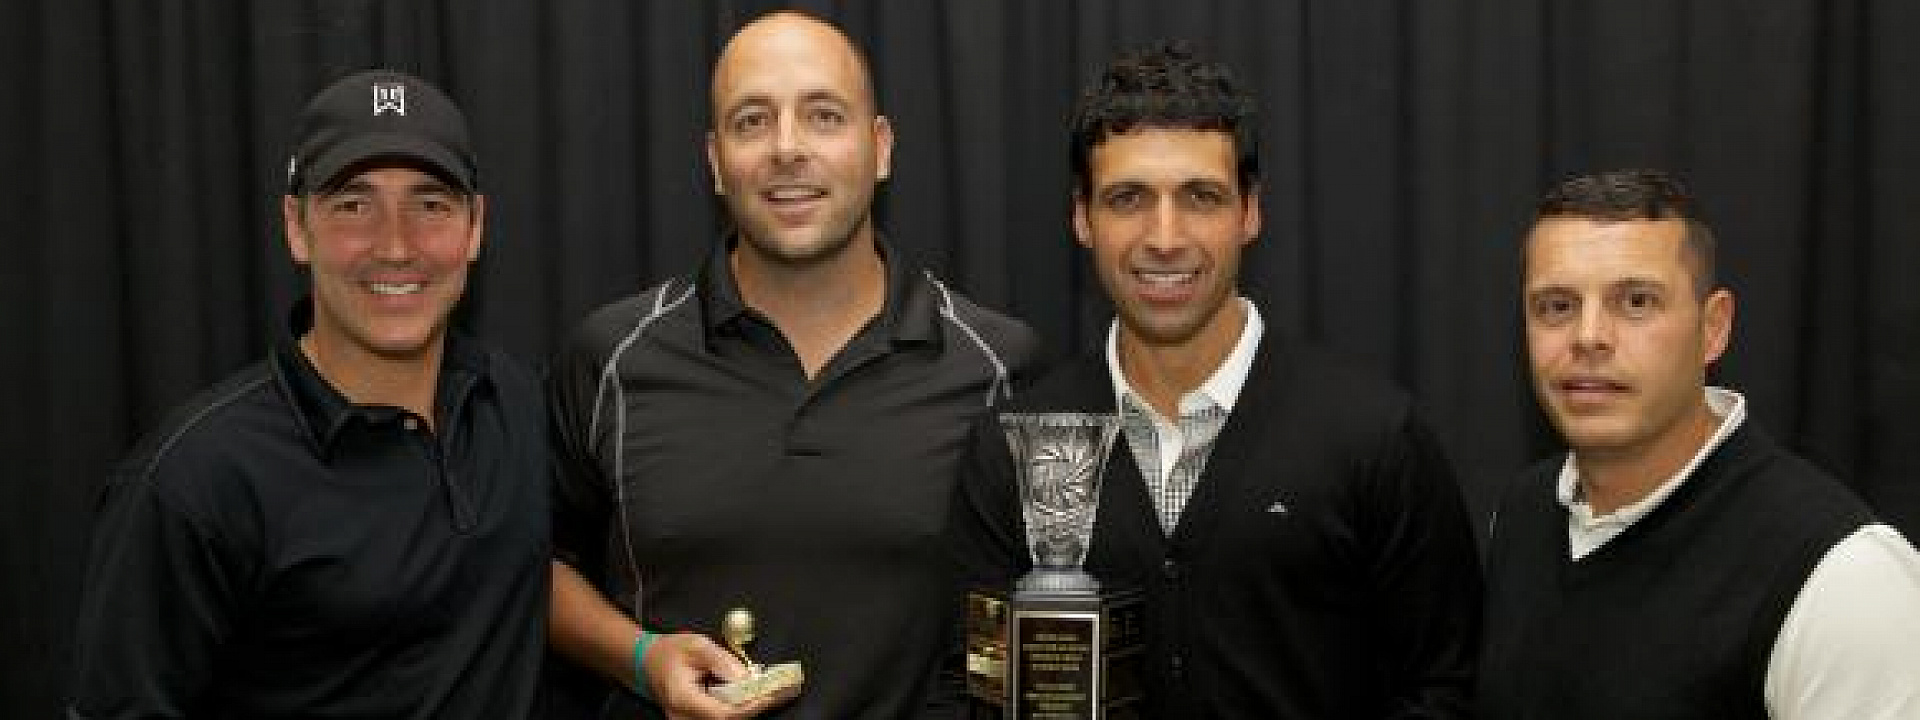 2012 Telfer School of Management Golf Tournament Winners